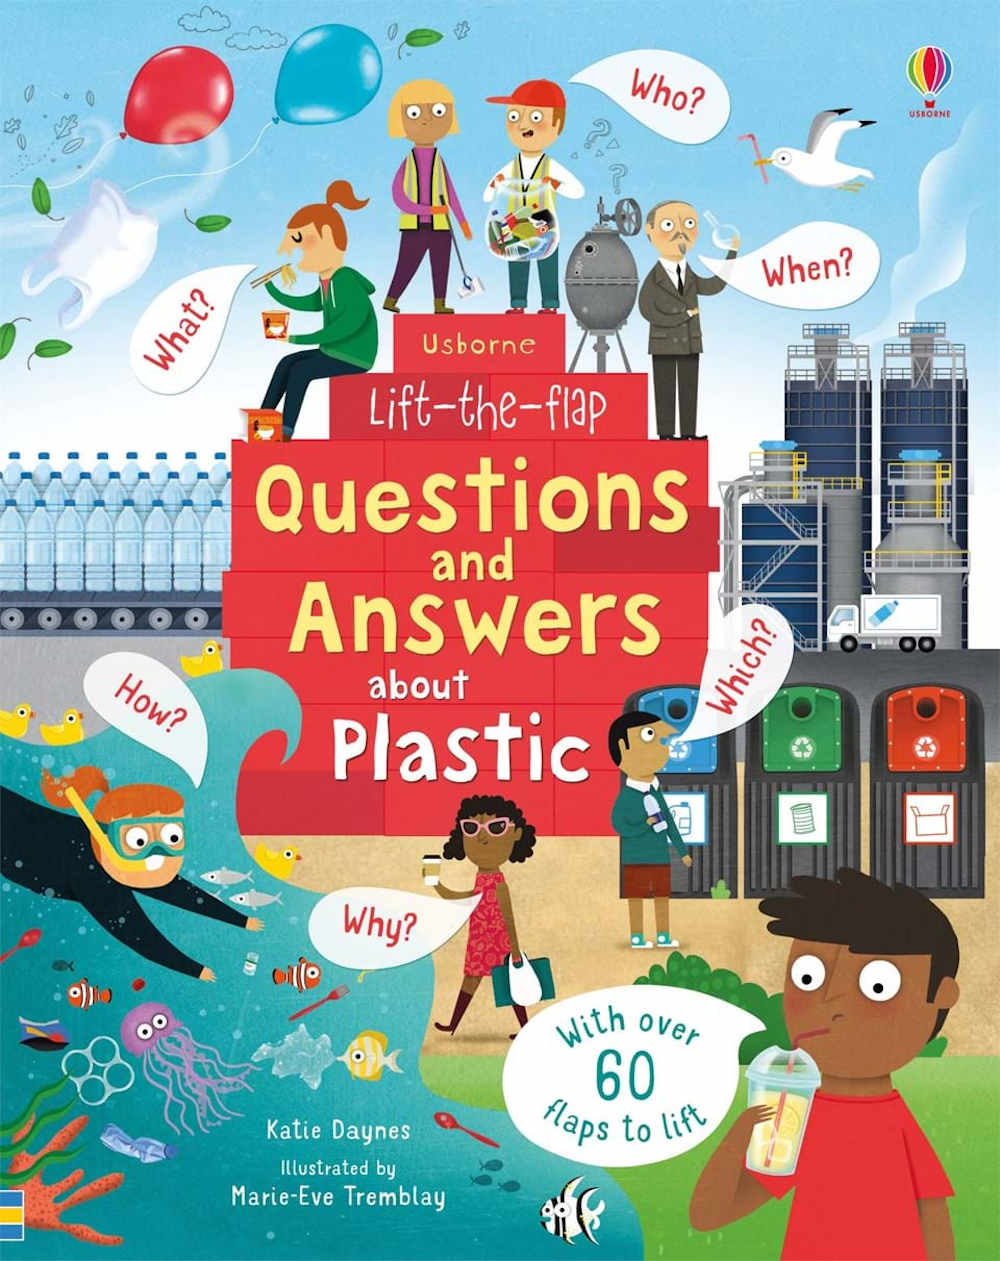 książka dla dzieci o ekologii, plastiku, recyklingu